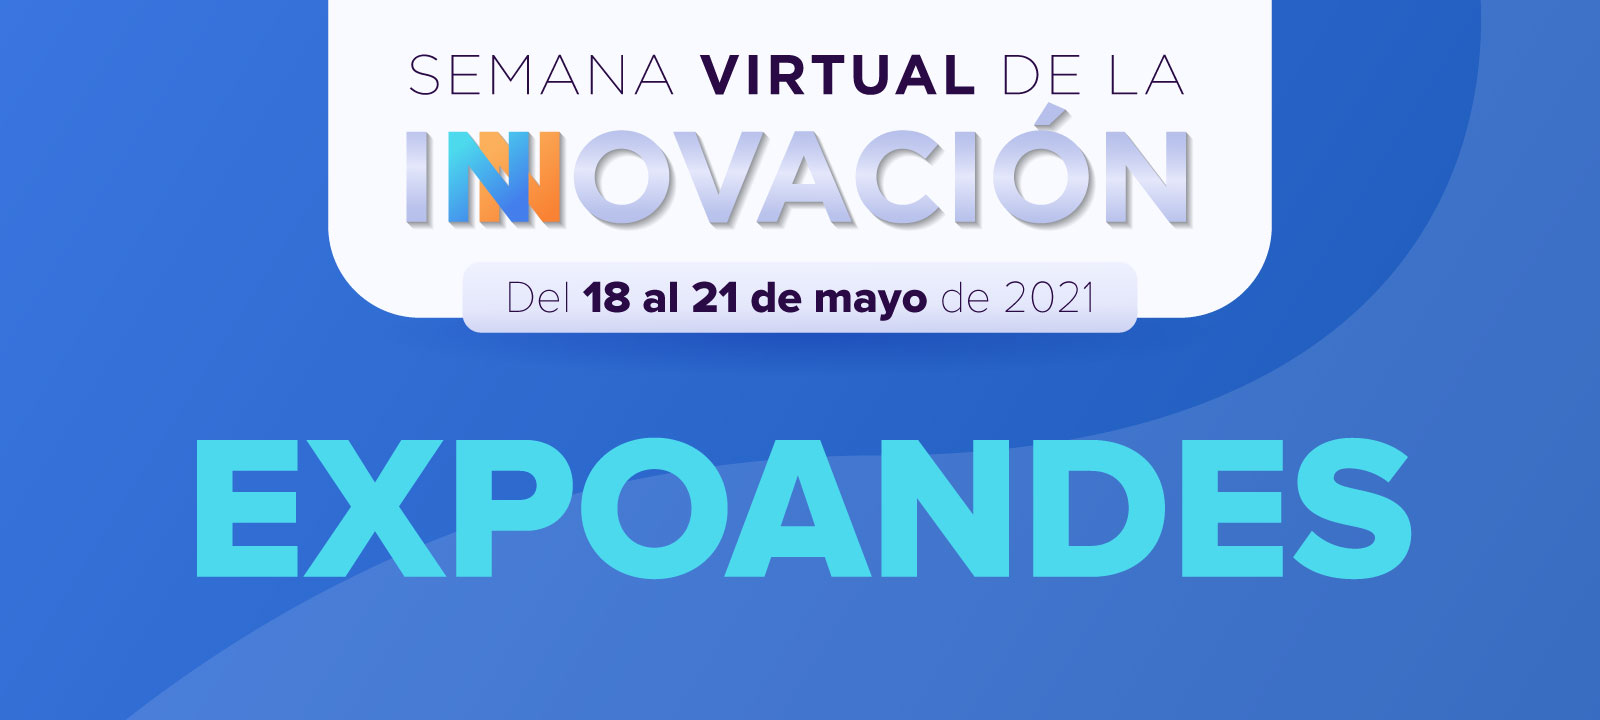 ExpoAndes - Semana Virtual de la Innovación